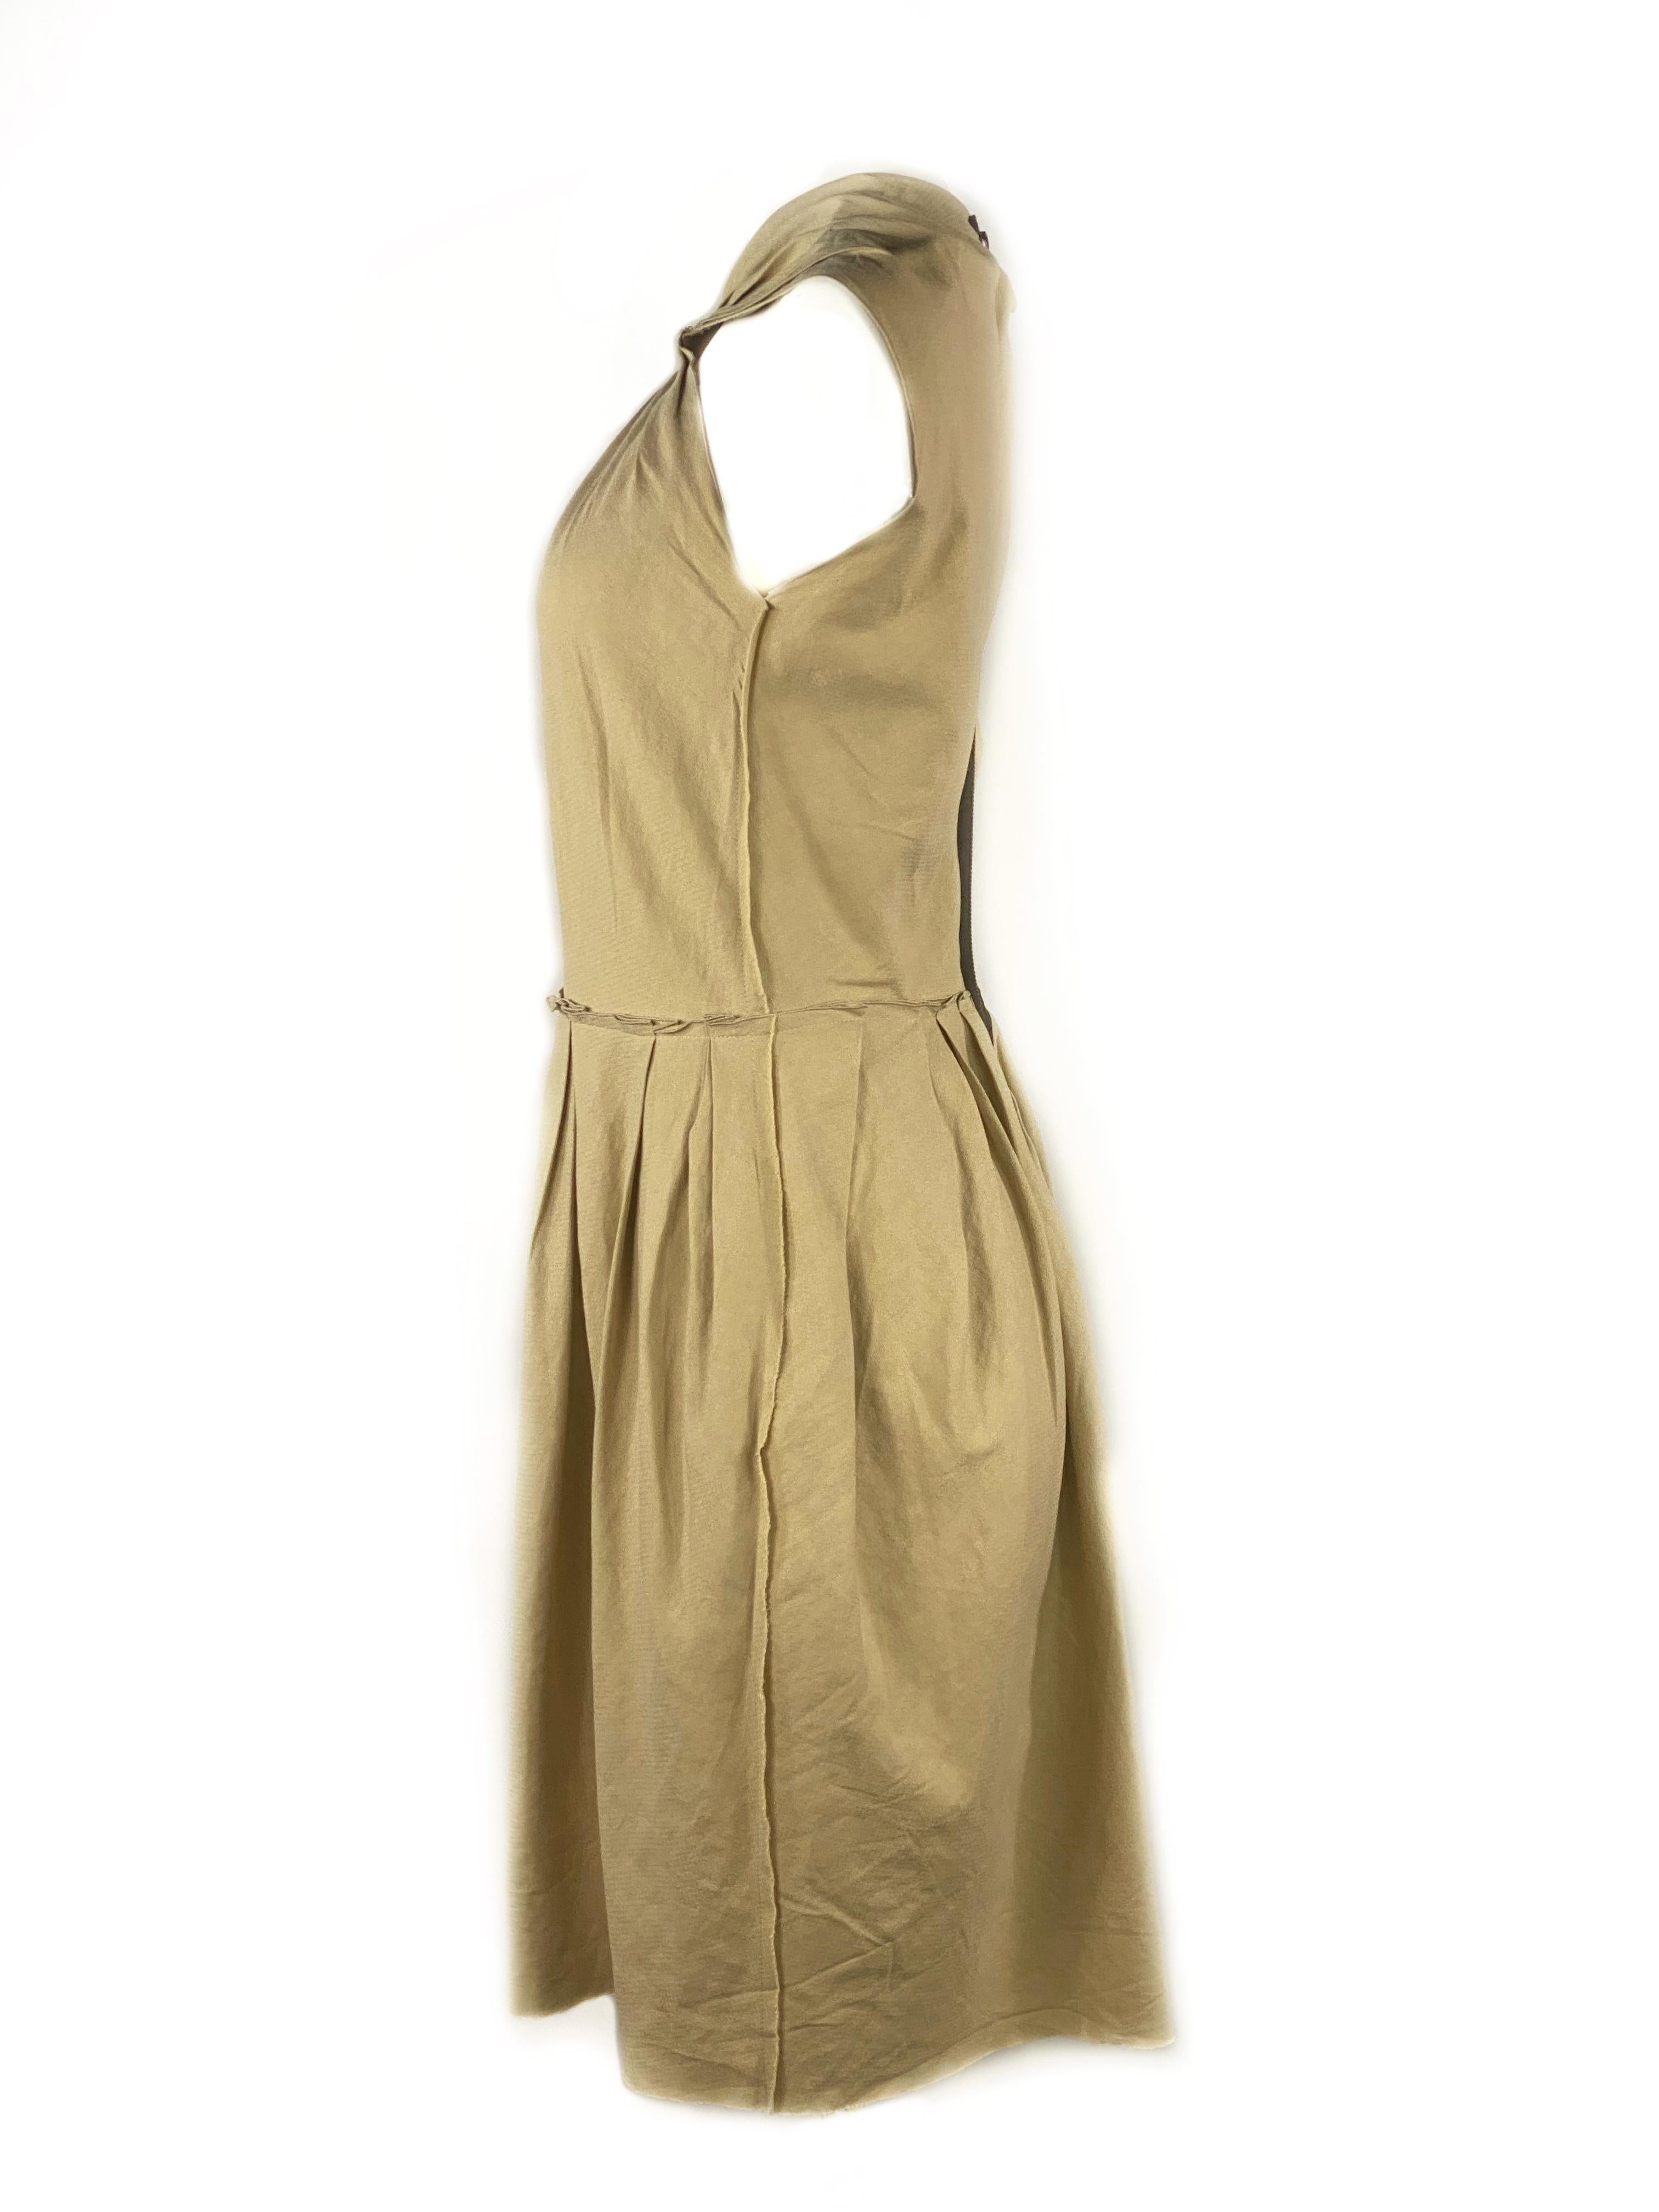 Women's LANVIN Est. 2009 Beige Sleeveless Mini dress w/ Zipper Size 36